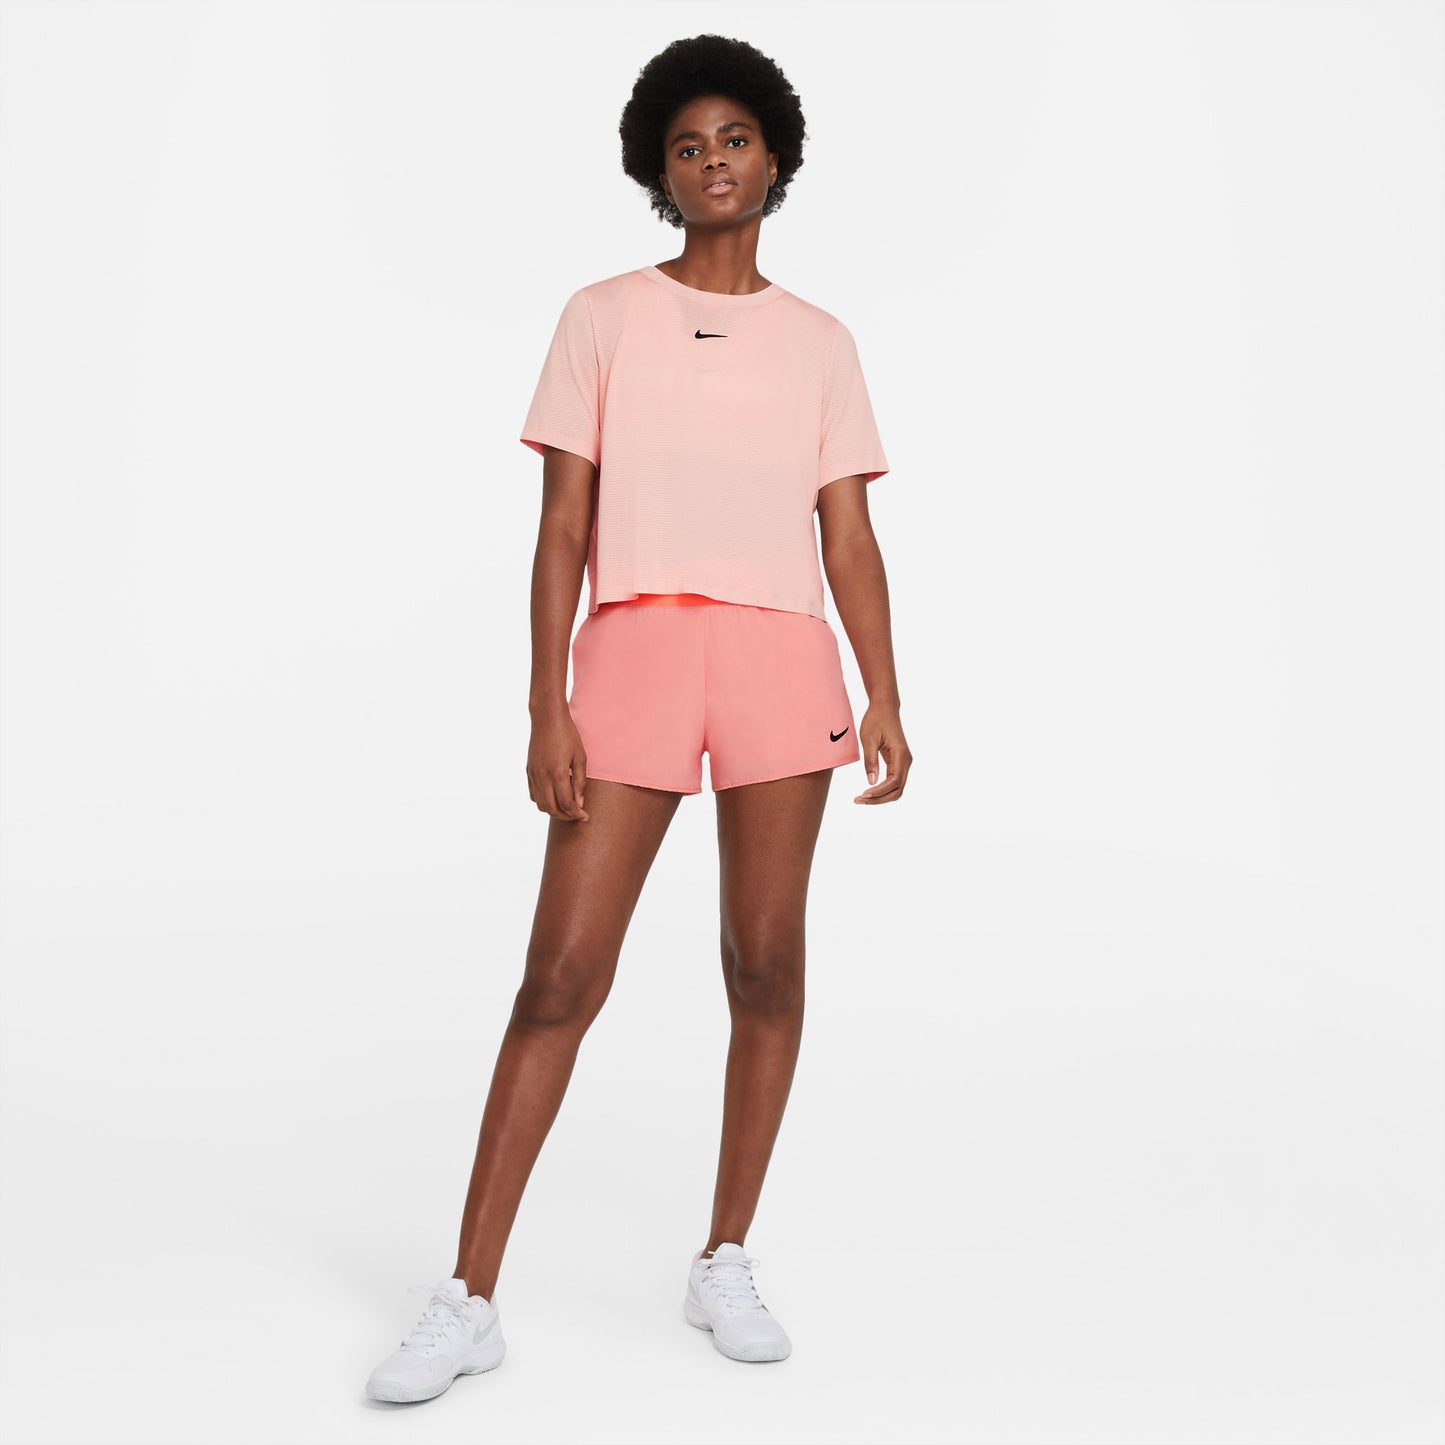 Nike Dri-Fit Advantage Women's Tennis Shirt Orange (3)